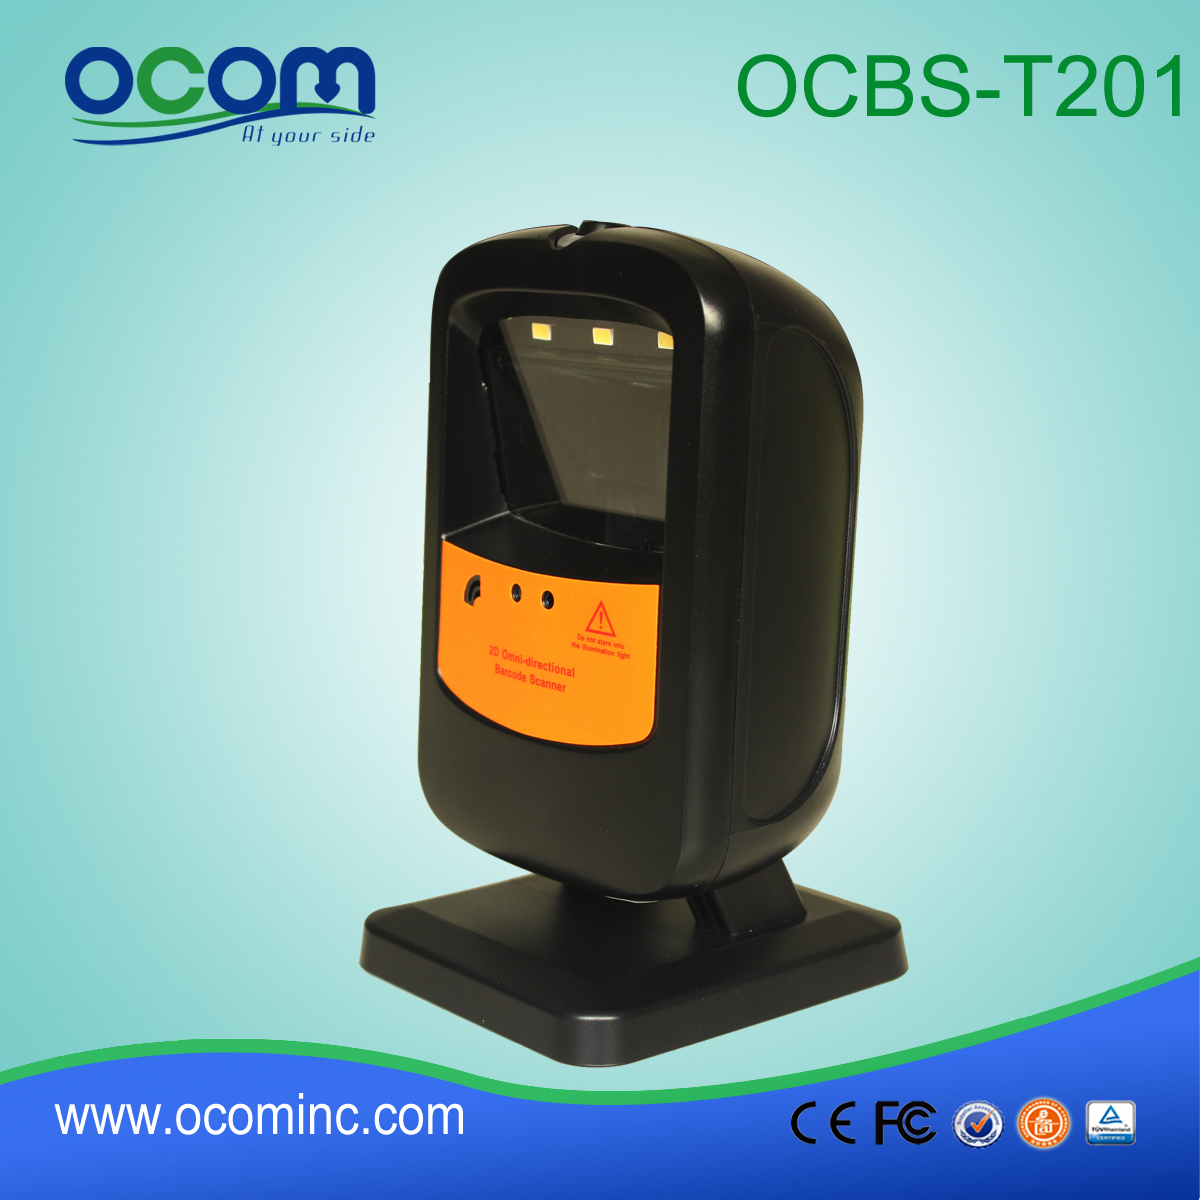 OCBS-T201 Desktop Laser Omidirectional 2D Barcode Scanner